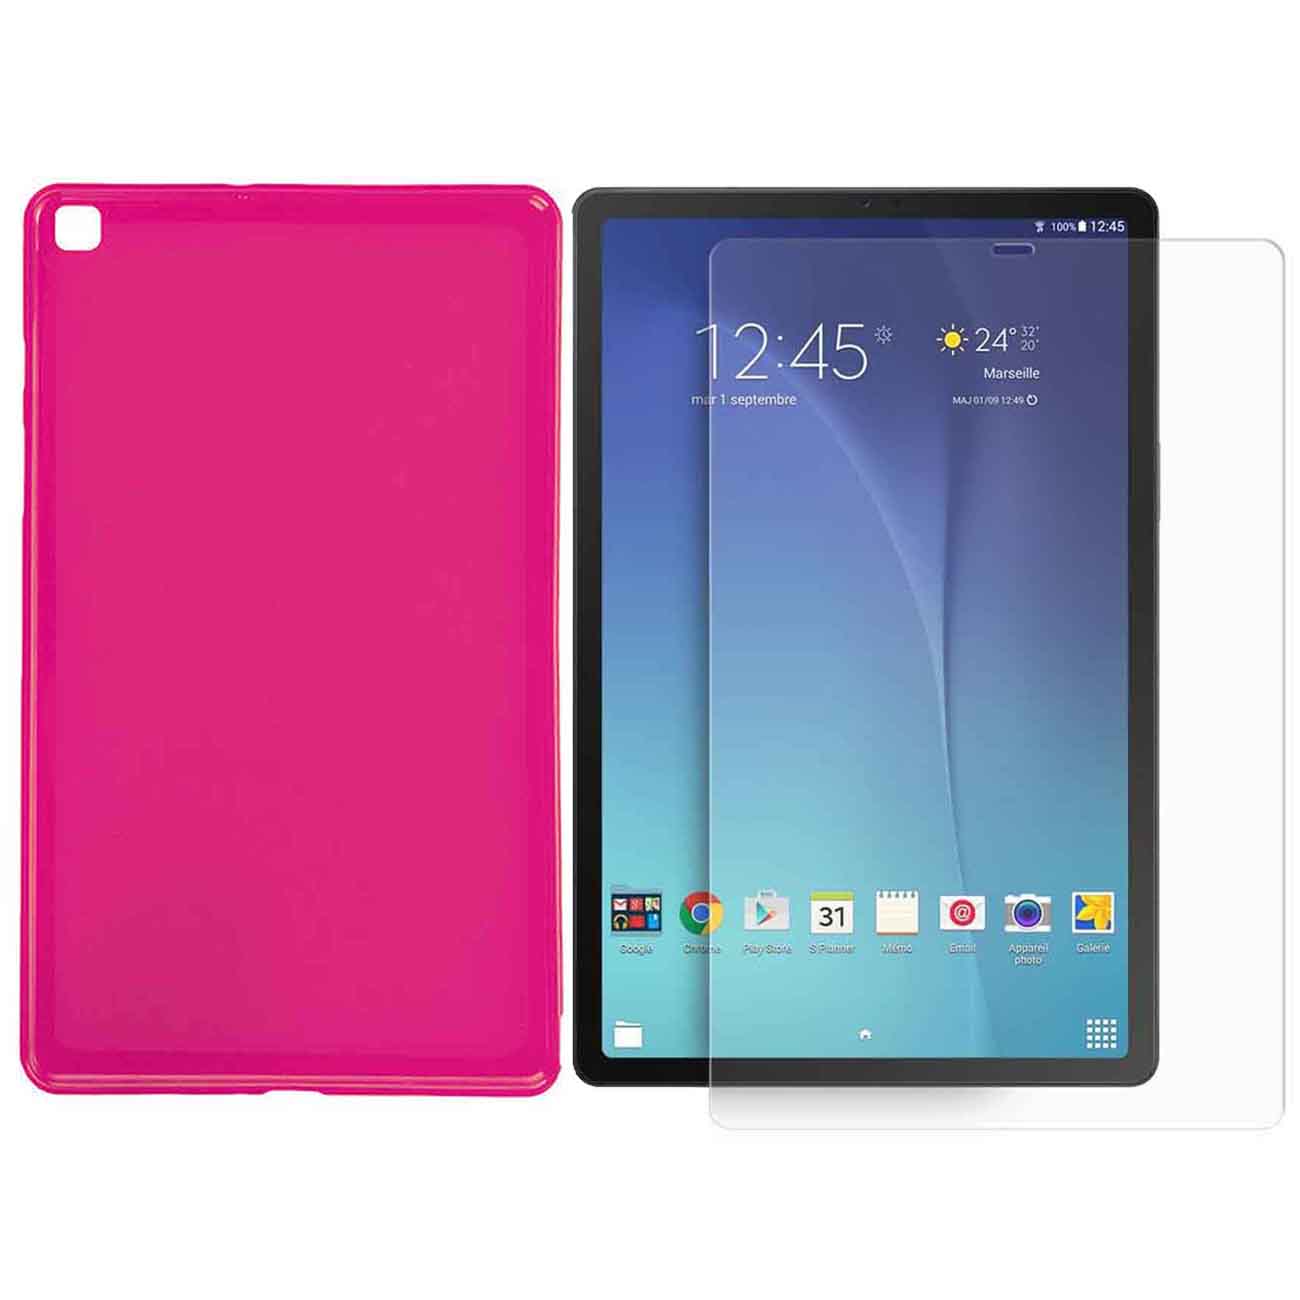 کاور مدل Ne-1 مناسب برای تبلت سامسونگ Galaxy Tab A 10.1 2019 / T515به همراه محافظ صفحه نمایش